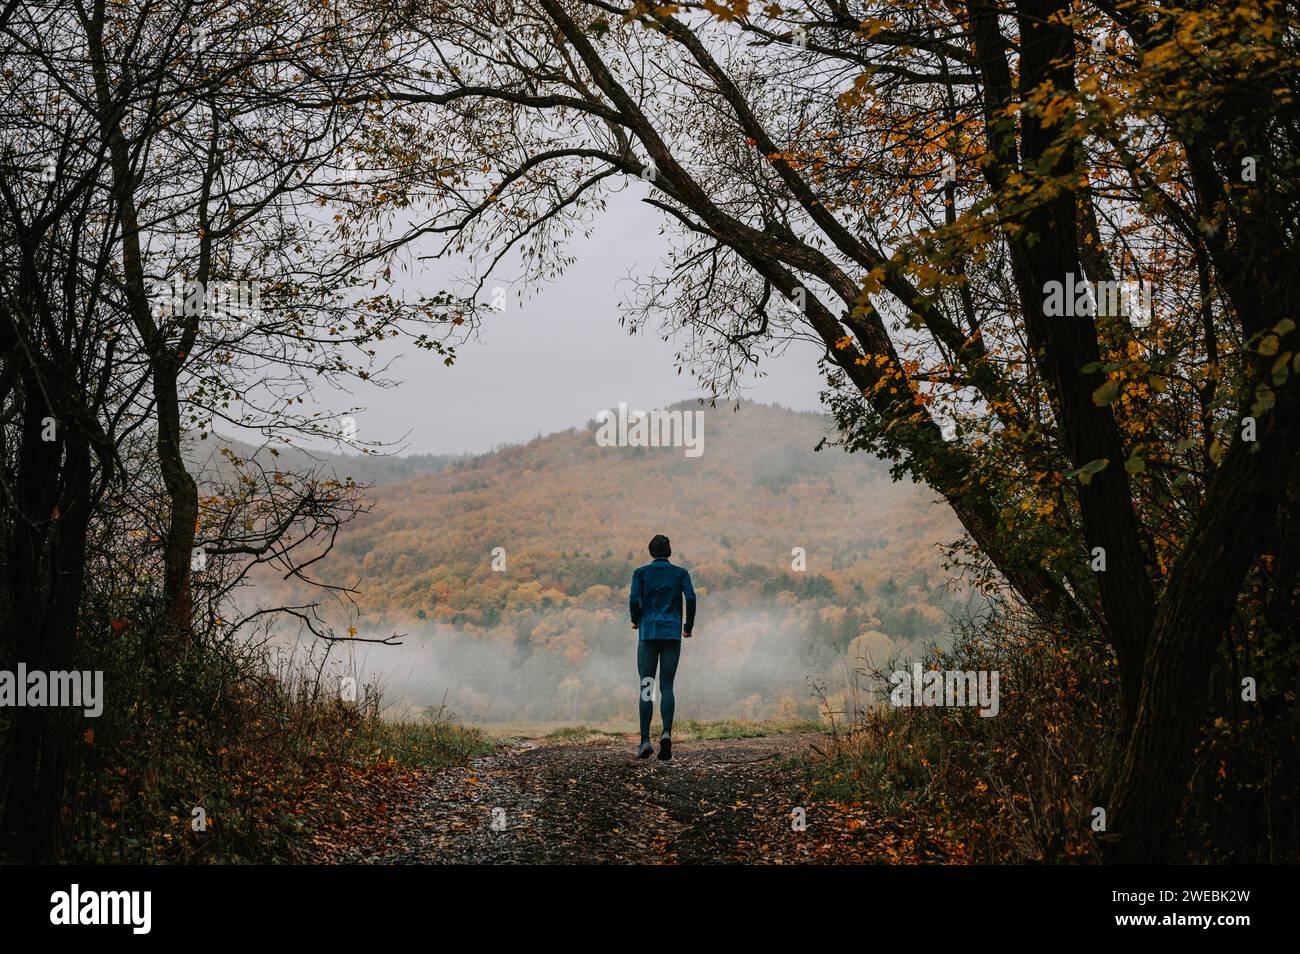 Pasos silenciosos en otoño: El viaje de un joven corredor de senderos a la tranquilidad Foto de stock